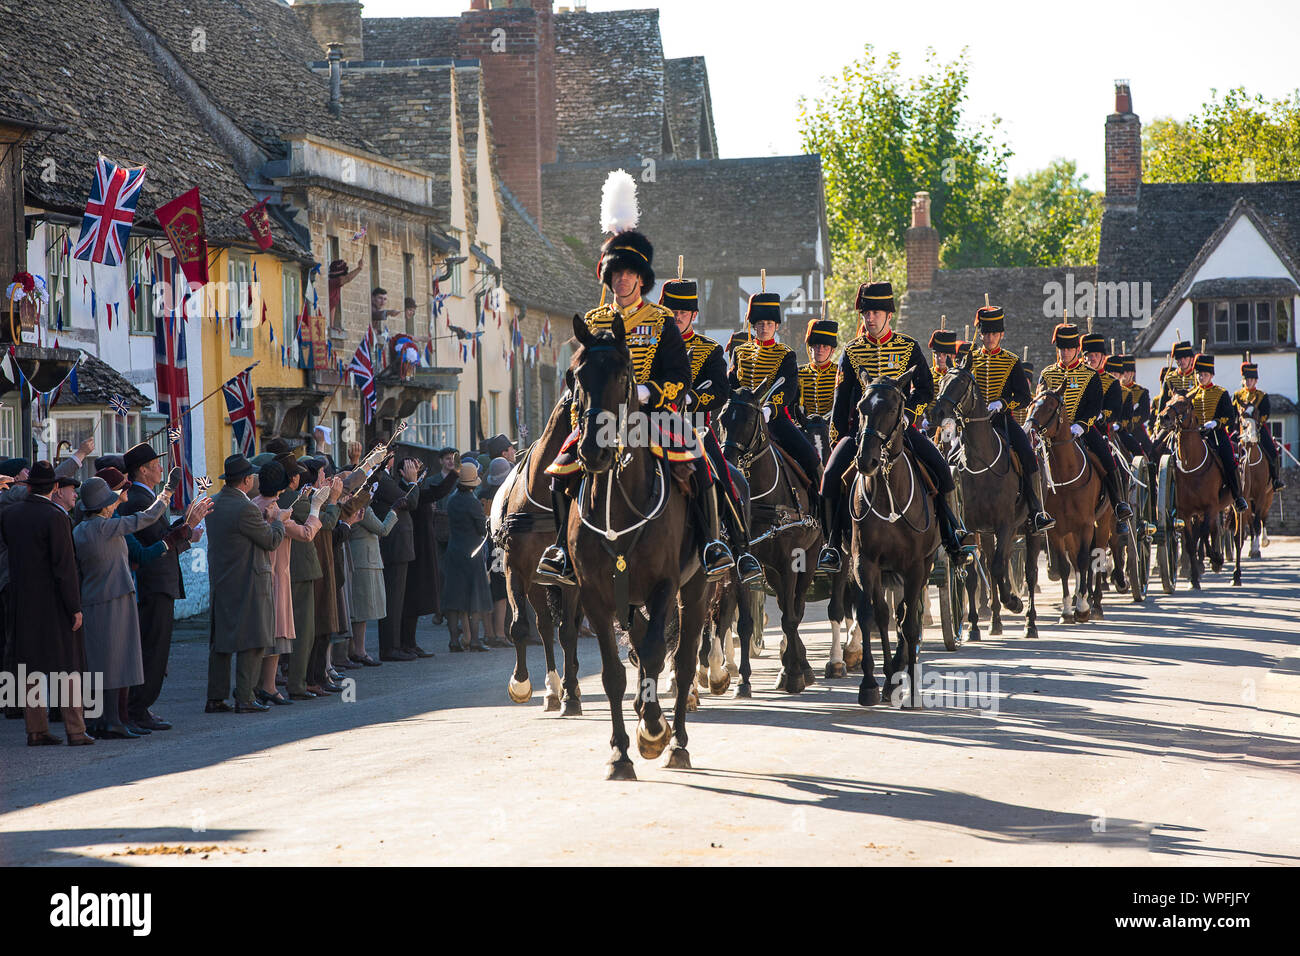 Die Könige Troop Royal Horse artillery während der Dreharbeiten zu einem Film Version von Smash TV-hit Downton Abbey für das Kino. Die Szene wurde in der Hohen St der National Trust Dorf Lacock in Wiltshire mit 80 Pferden und Gewehren durch die Street Parade. Stockfoto